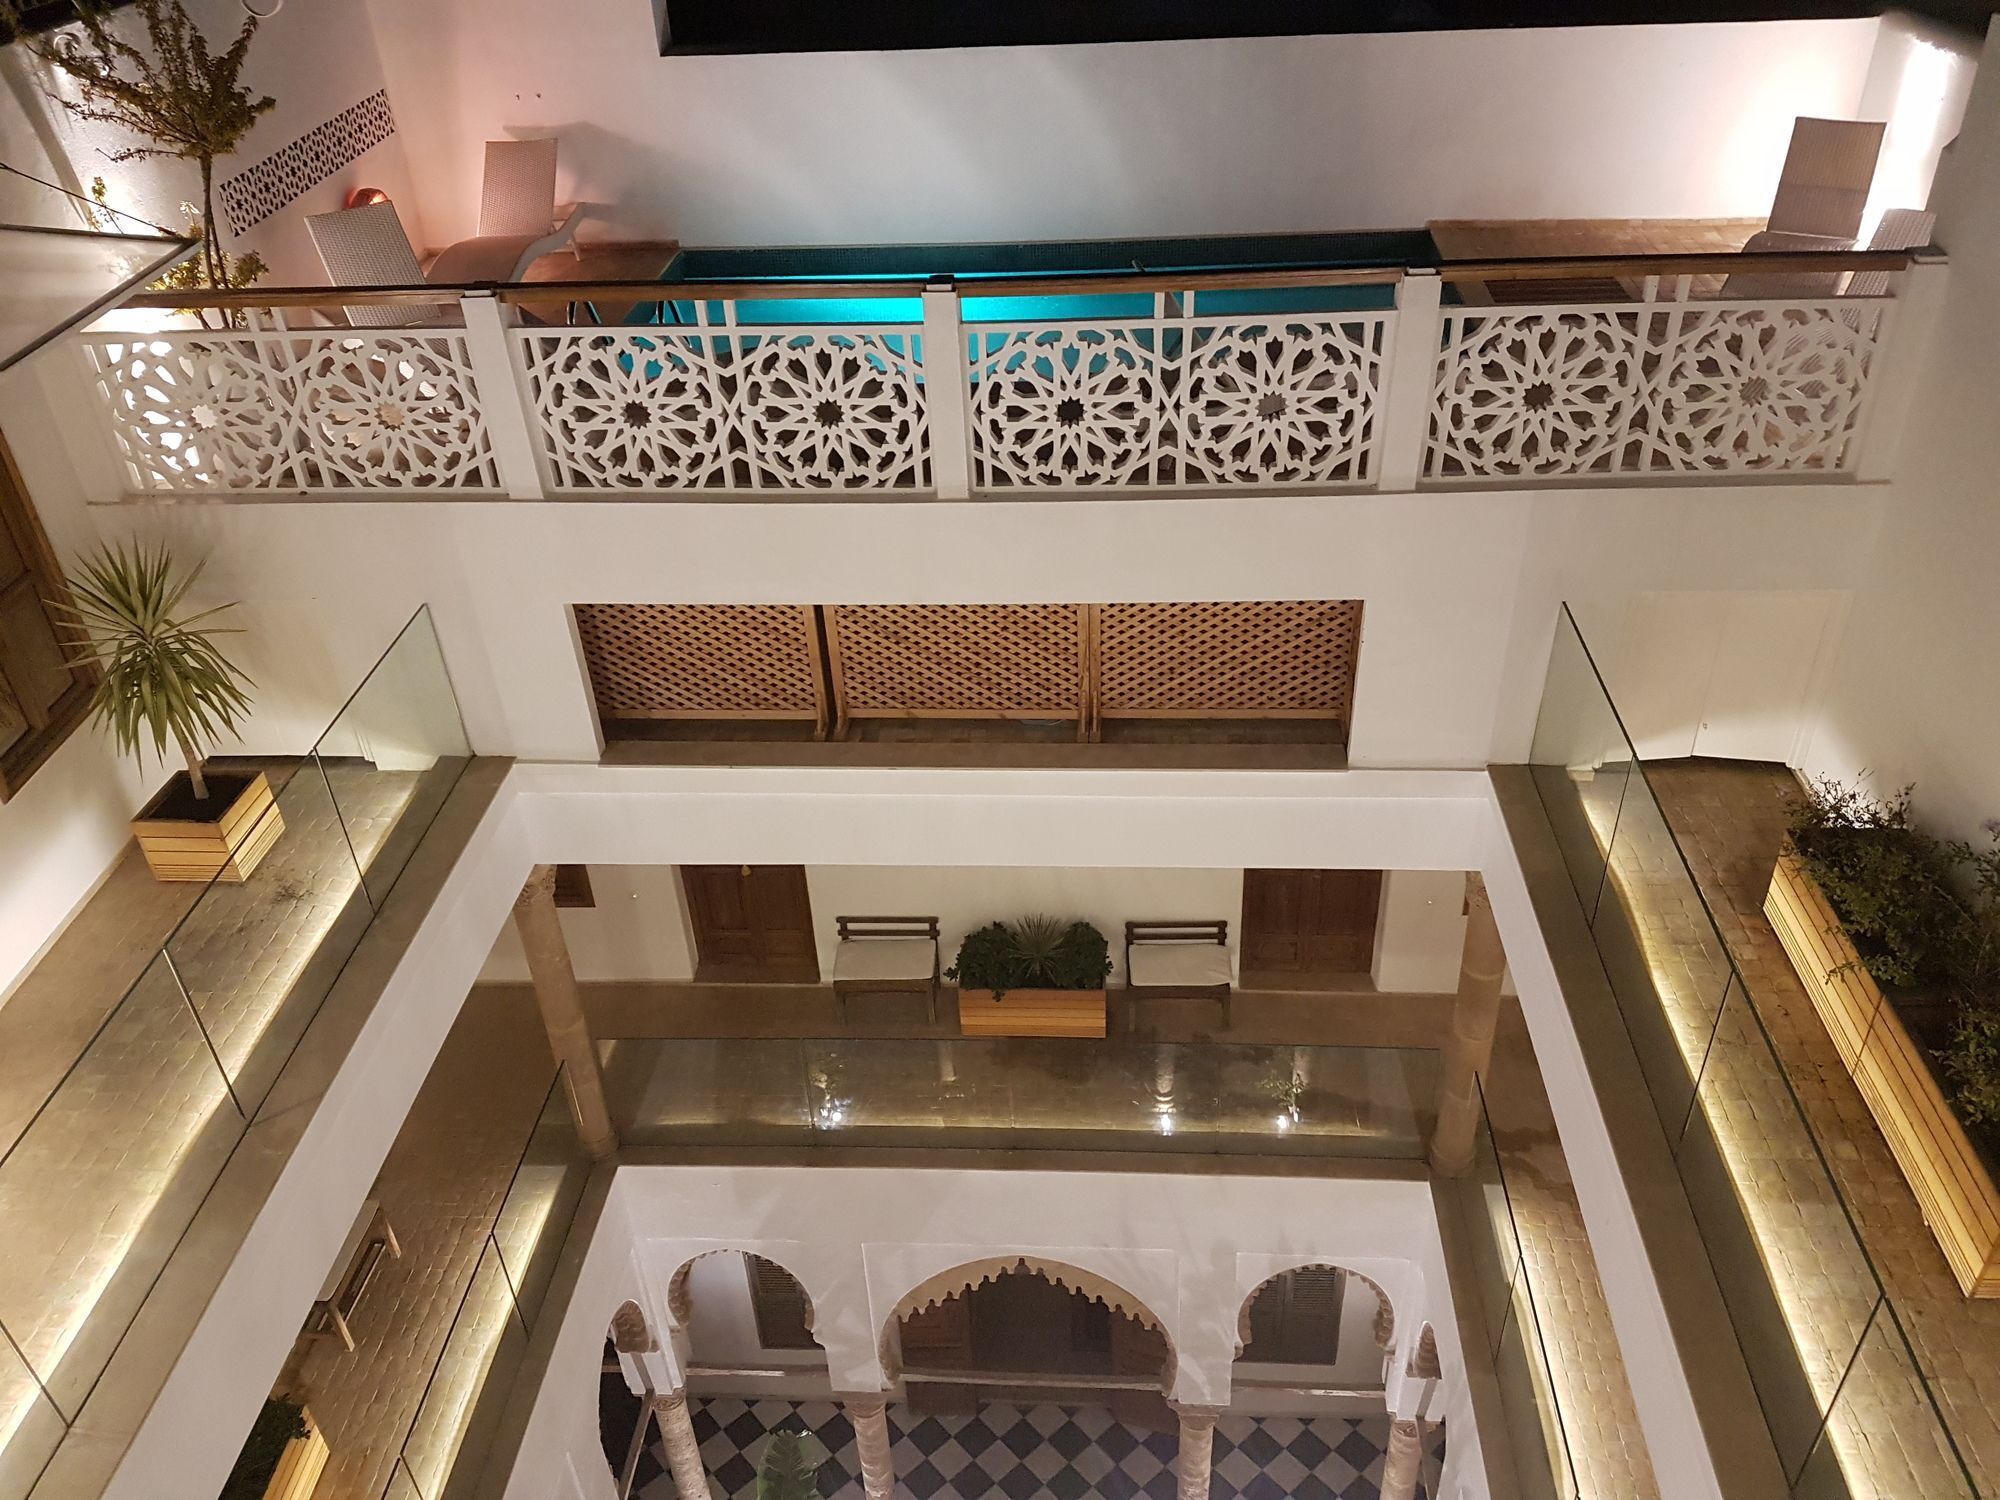 Готель Dar Shaan Рабат Екстер'єр фото